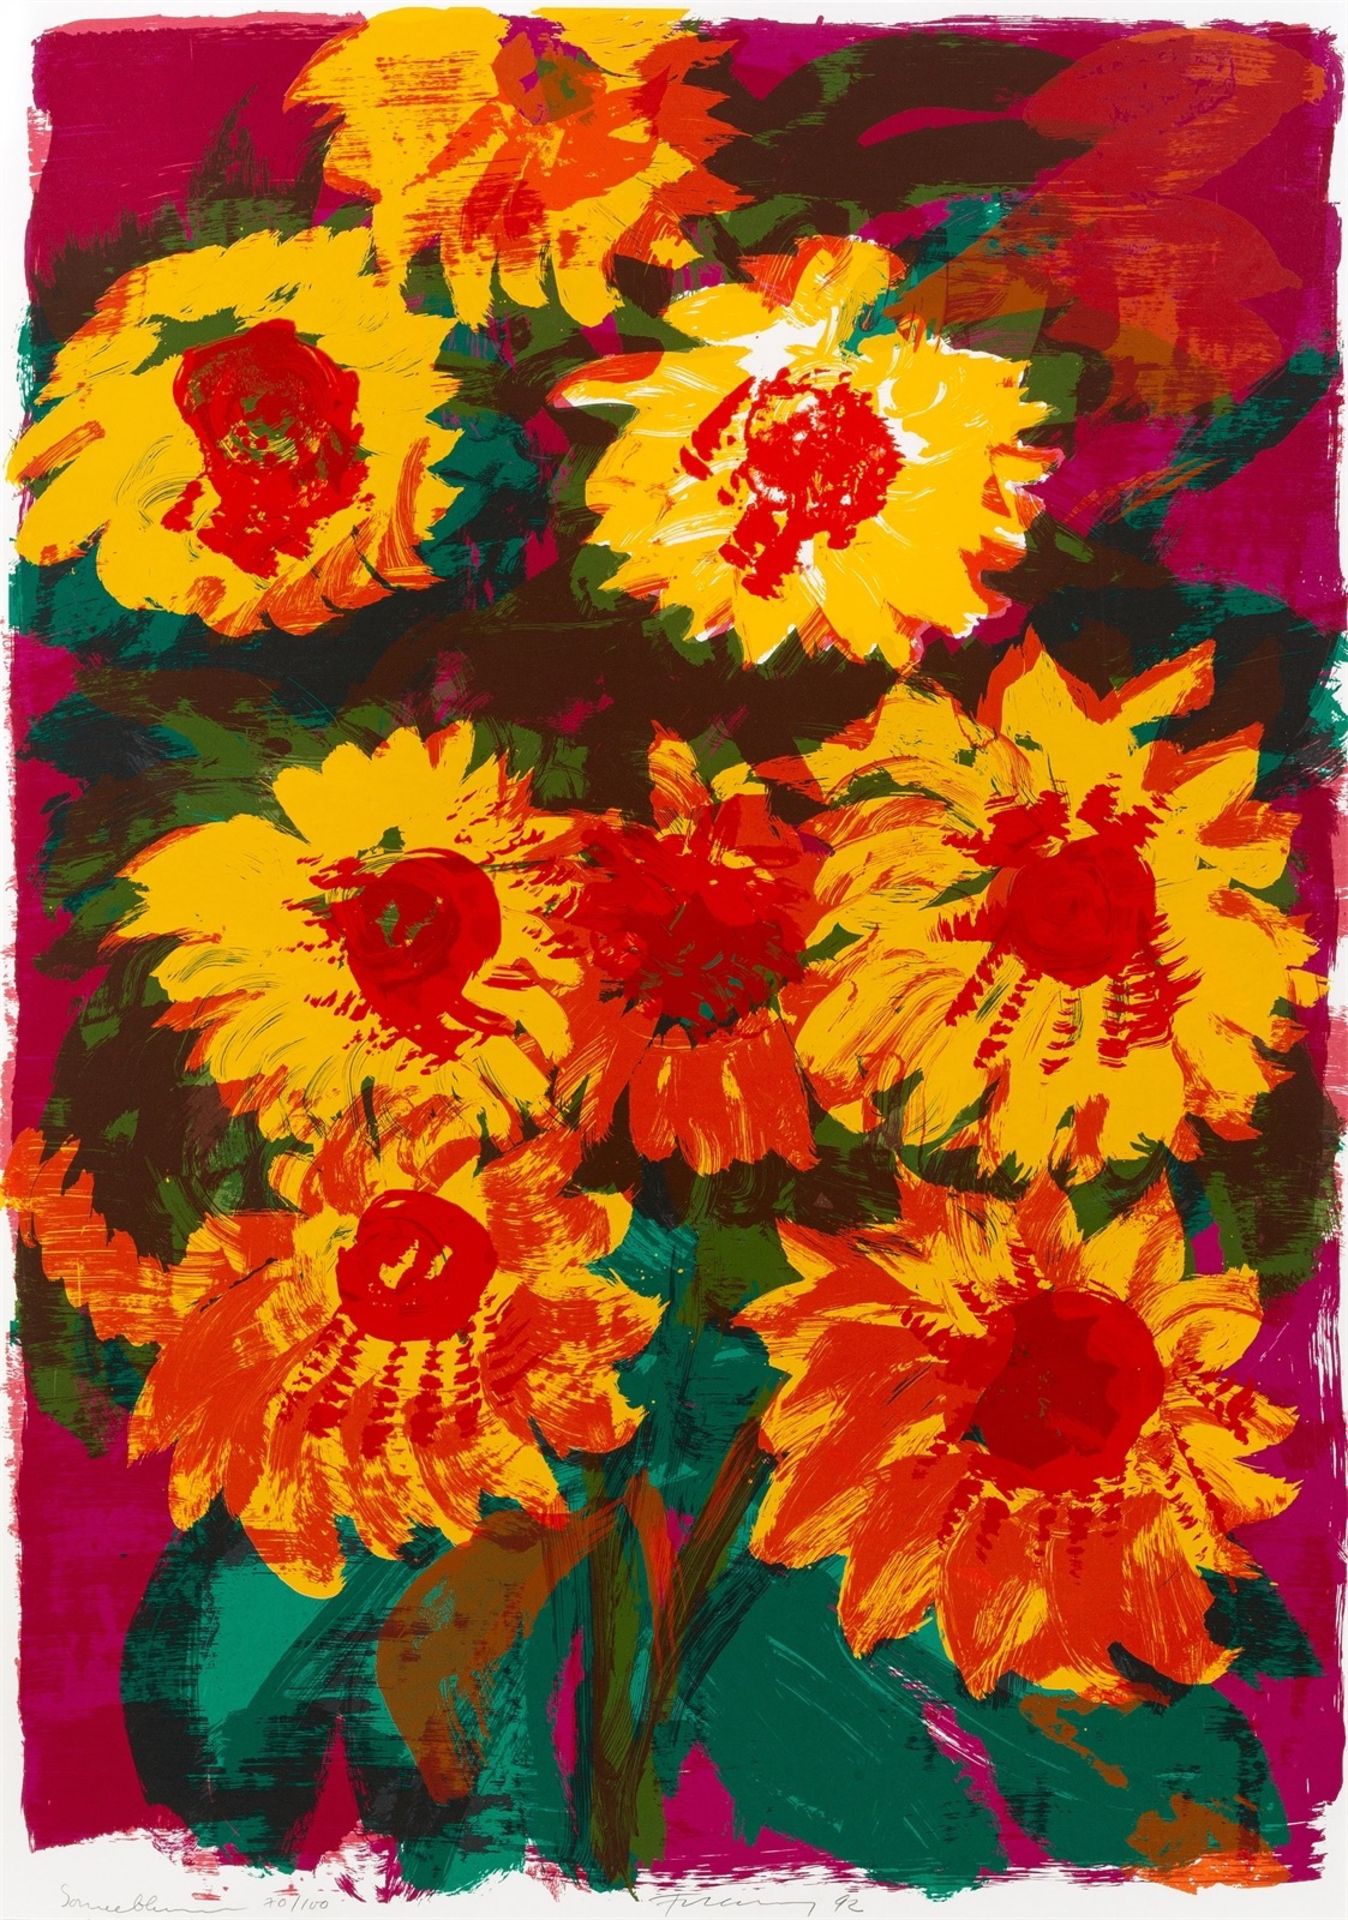 Rainer Fetting. „Sonnenblumen“. 1992